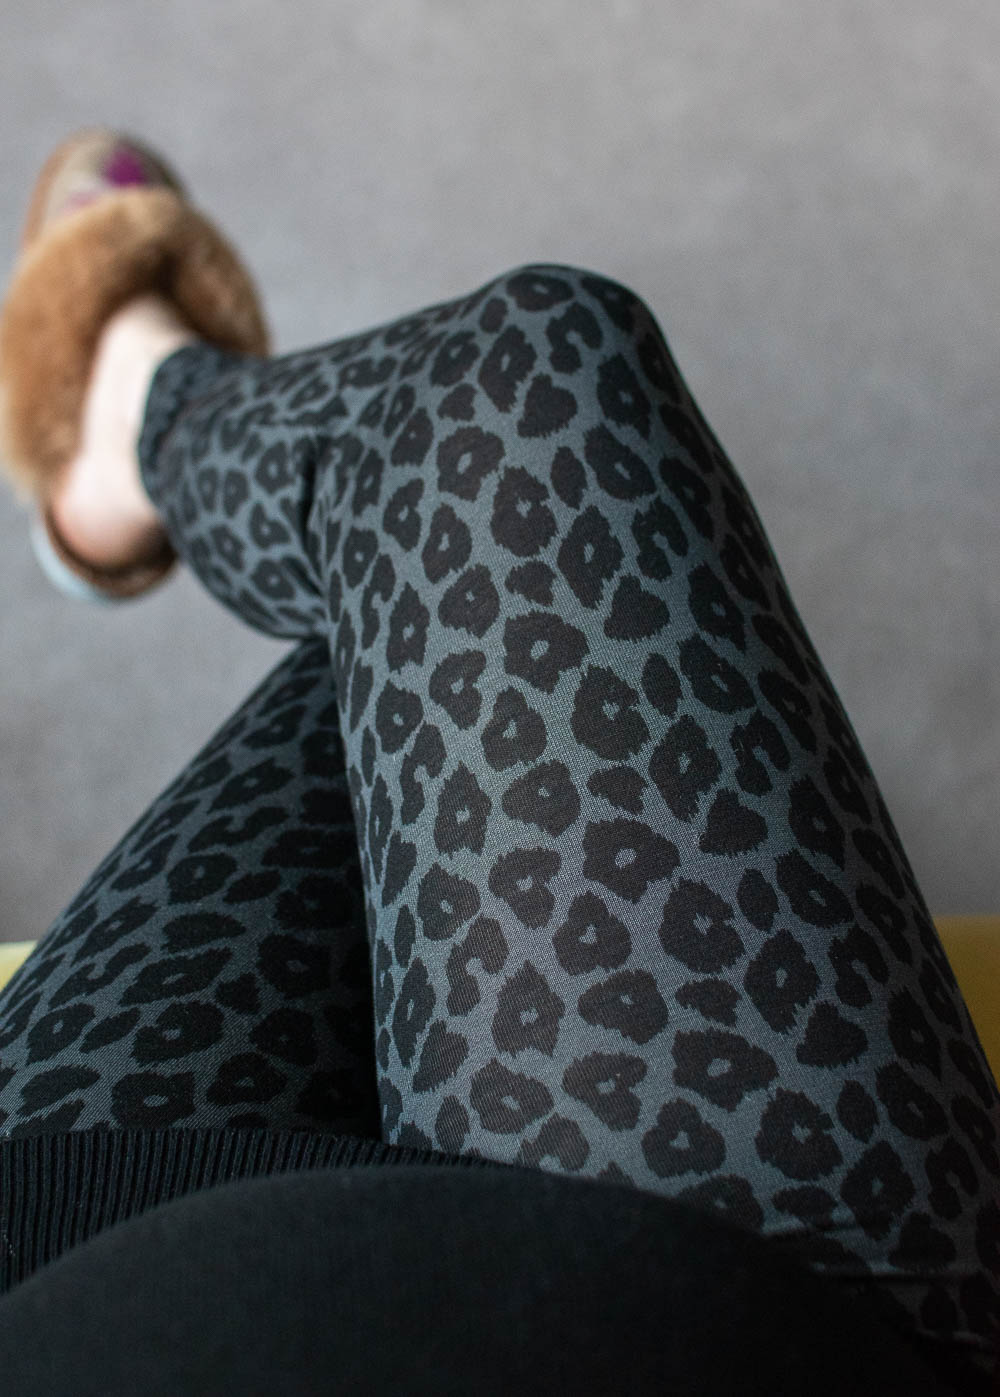 Boob's once-on-never-off leggings in leopard print, maternity leggings